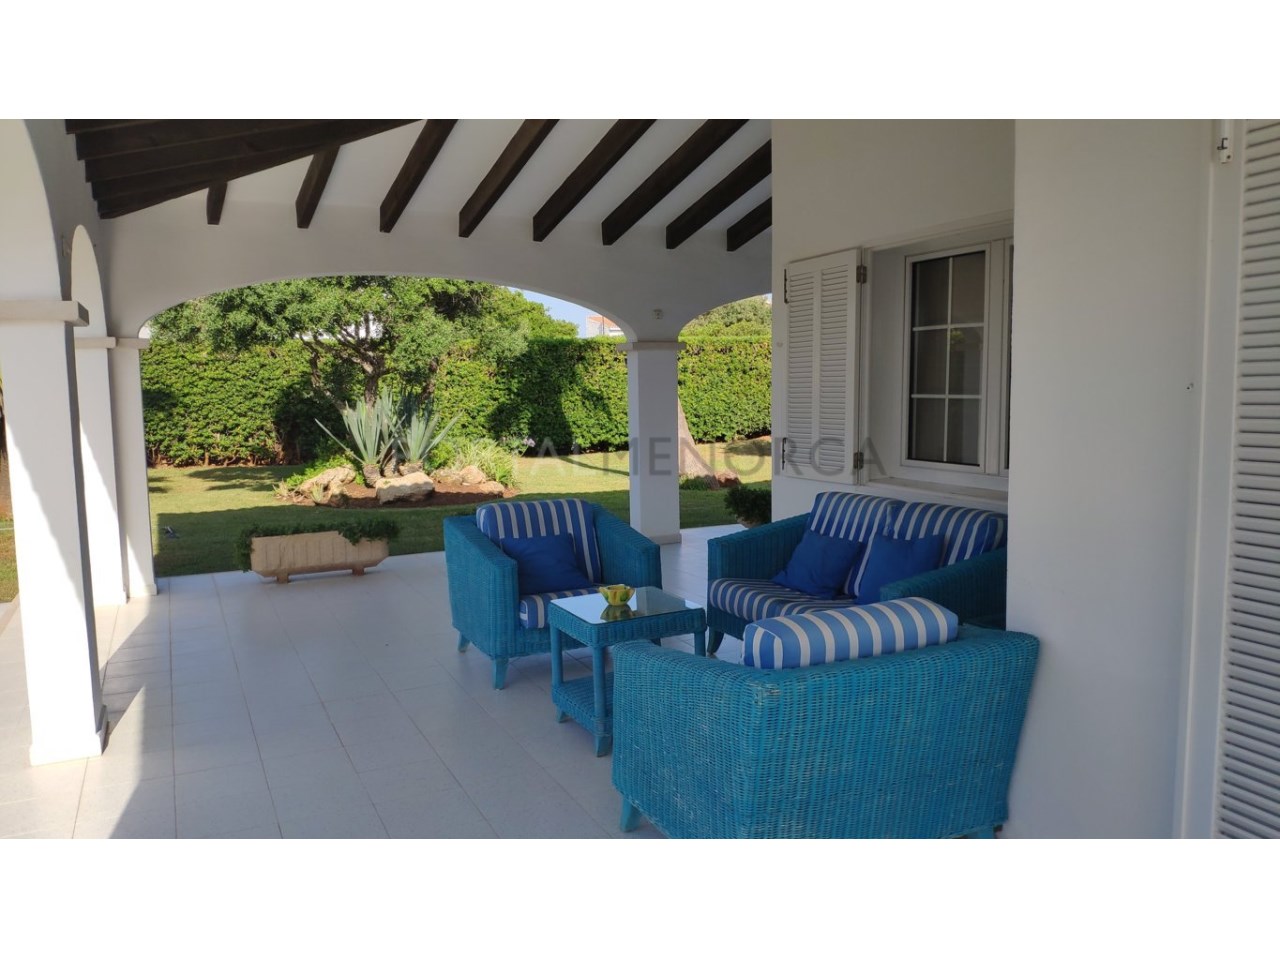 Villa for sale in Calan Blanes with a tourist license Ciutadella Menorca-Terrace